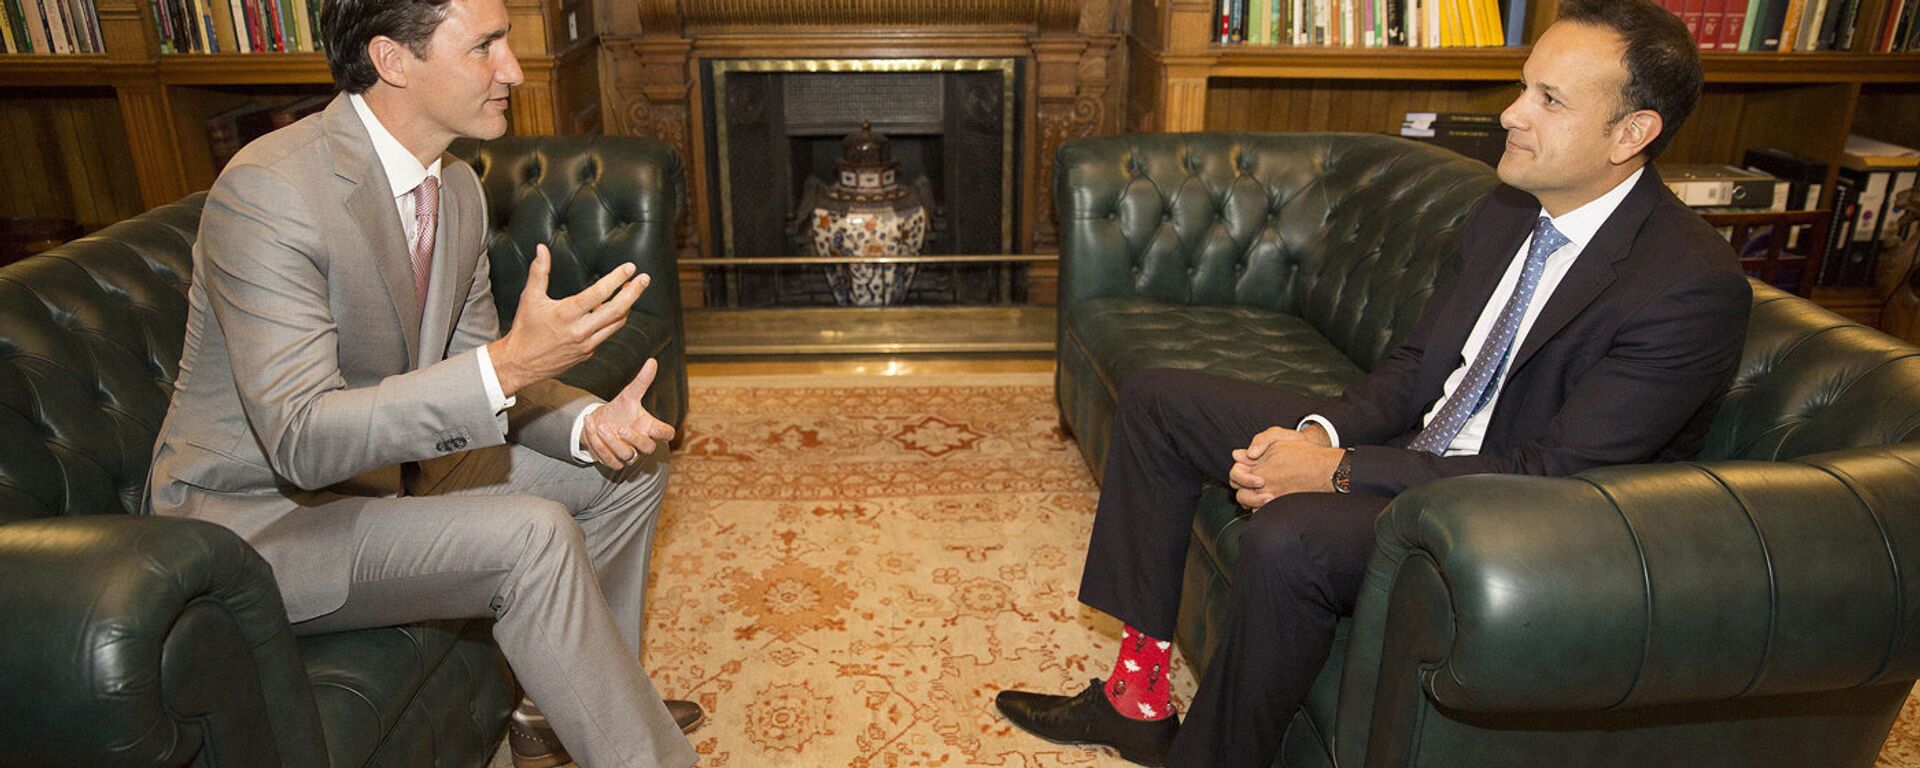 Премьер-министр Канады Джастин Трюдо и премьер-министр Ирландии Лео Варадкар - Sputnik Латвия, 1920, 04.07.2017